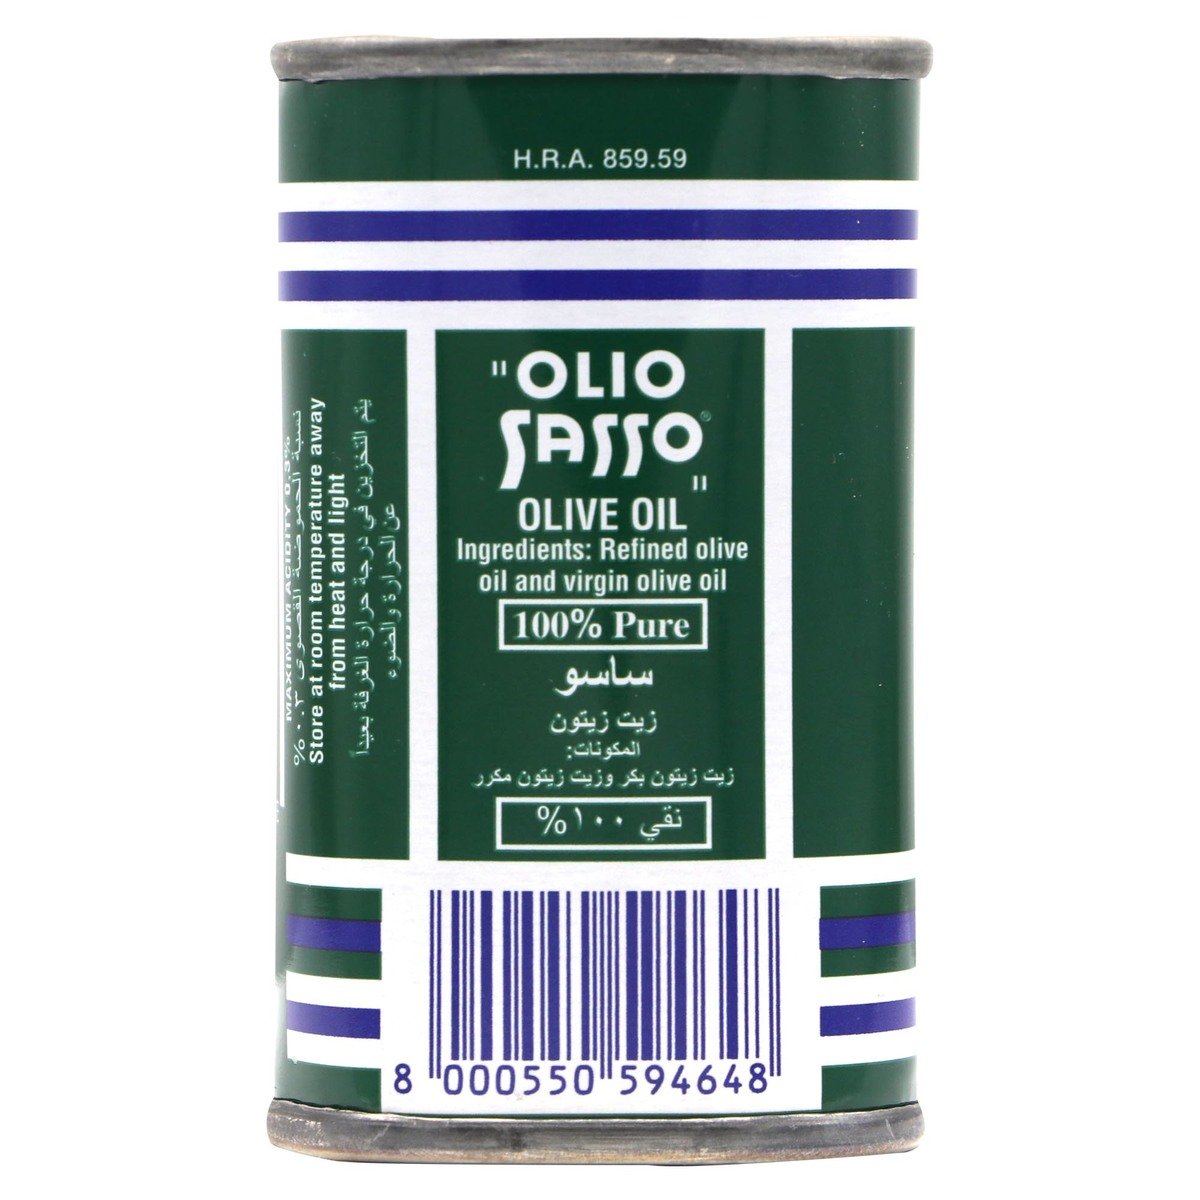 Olio Sasso Olive Oil 175ml